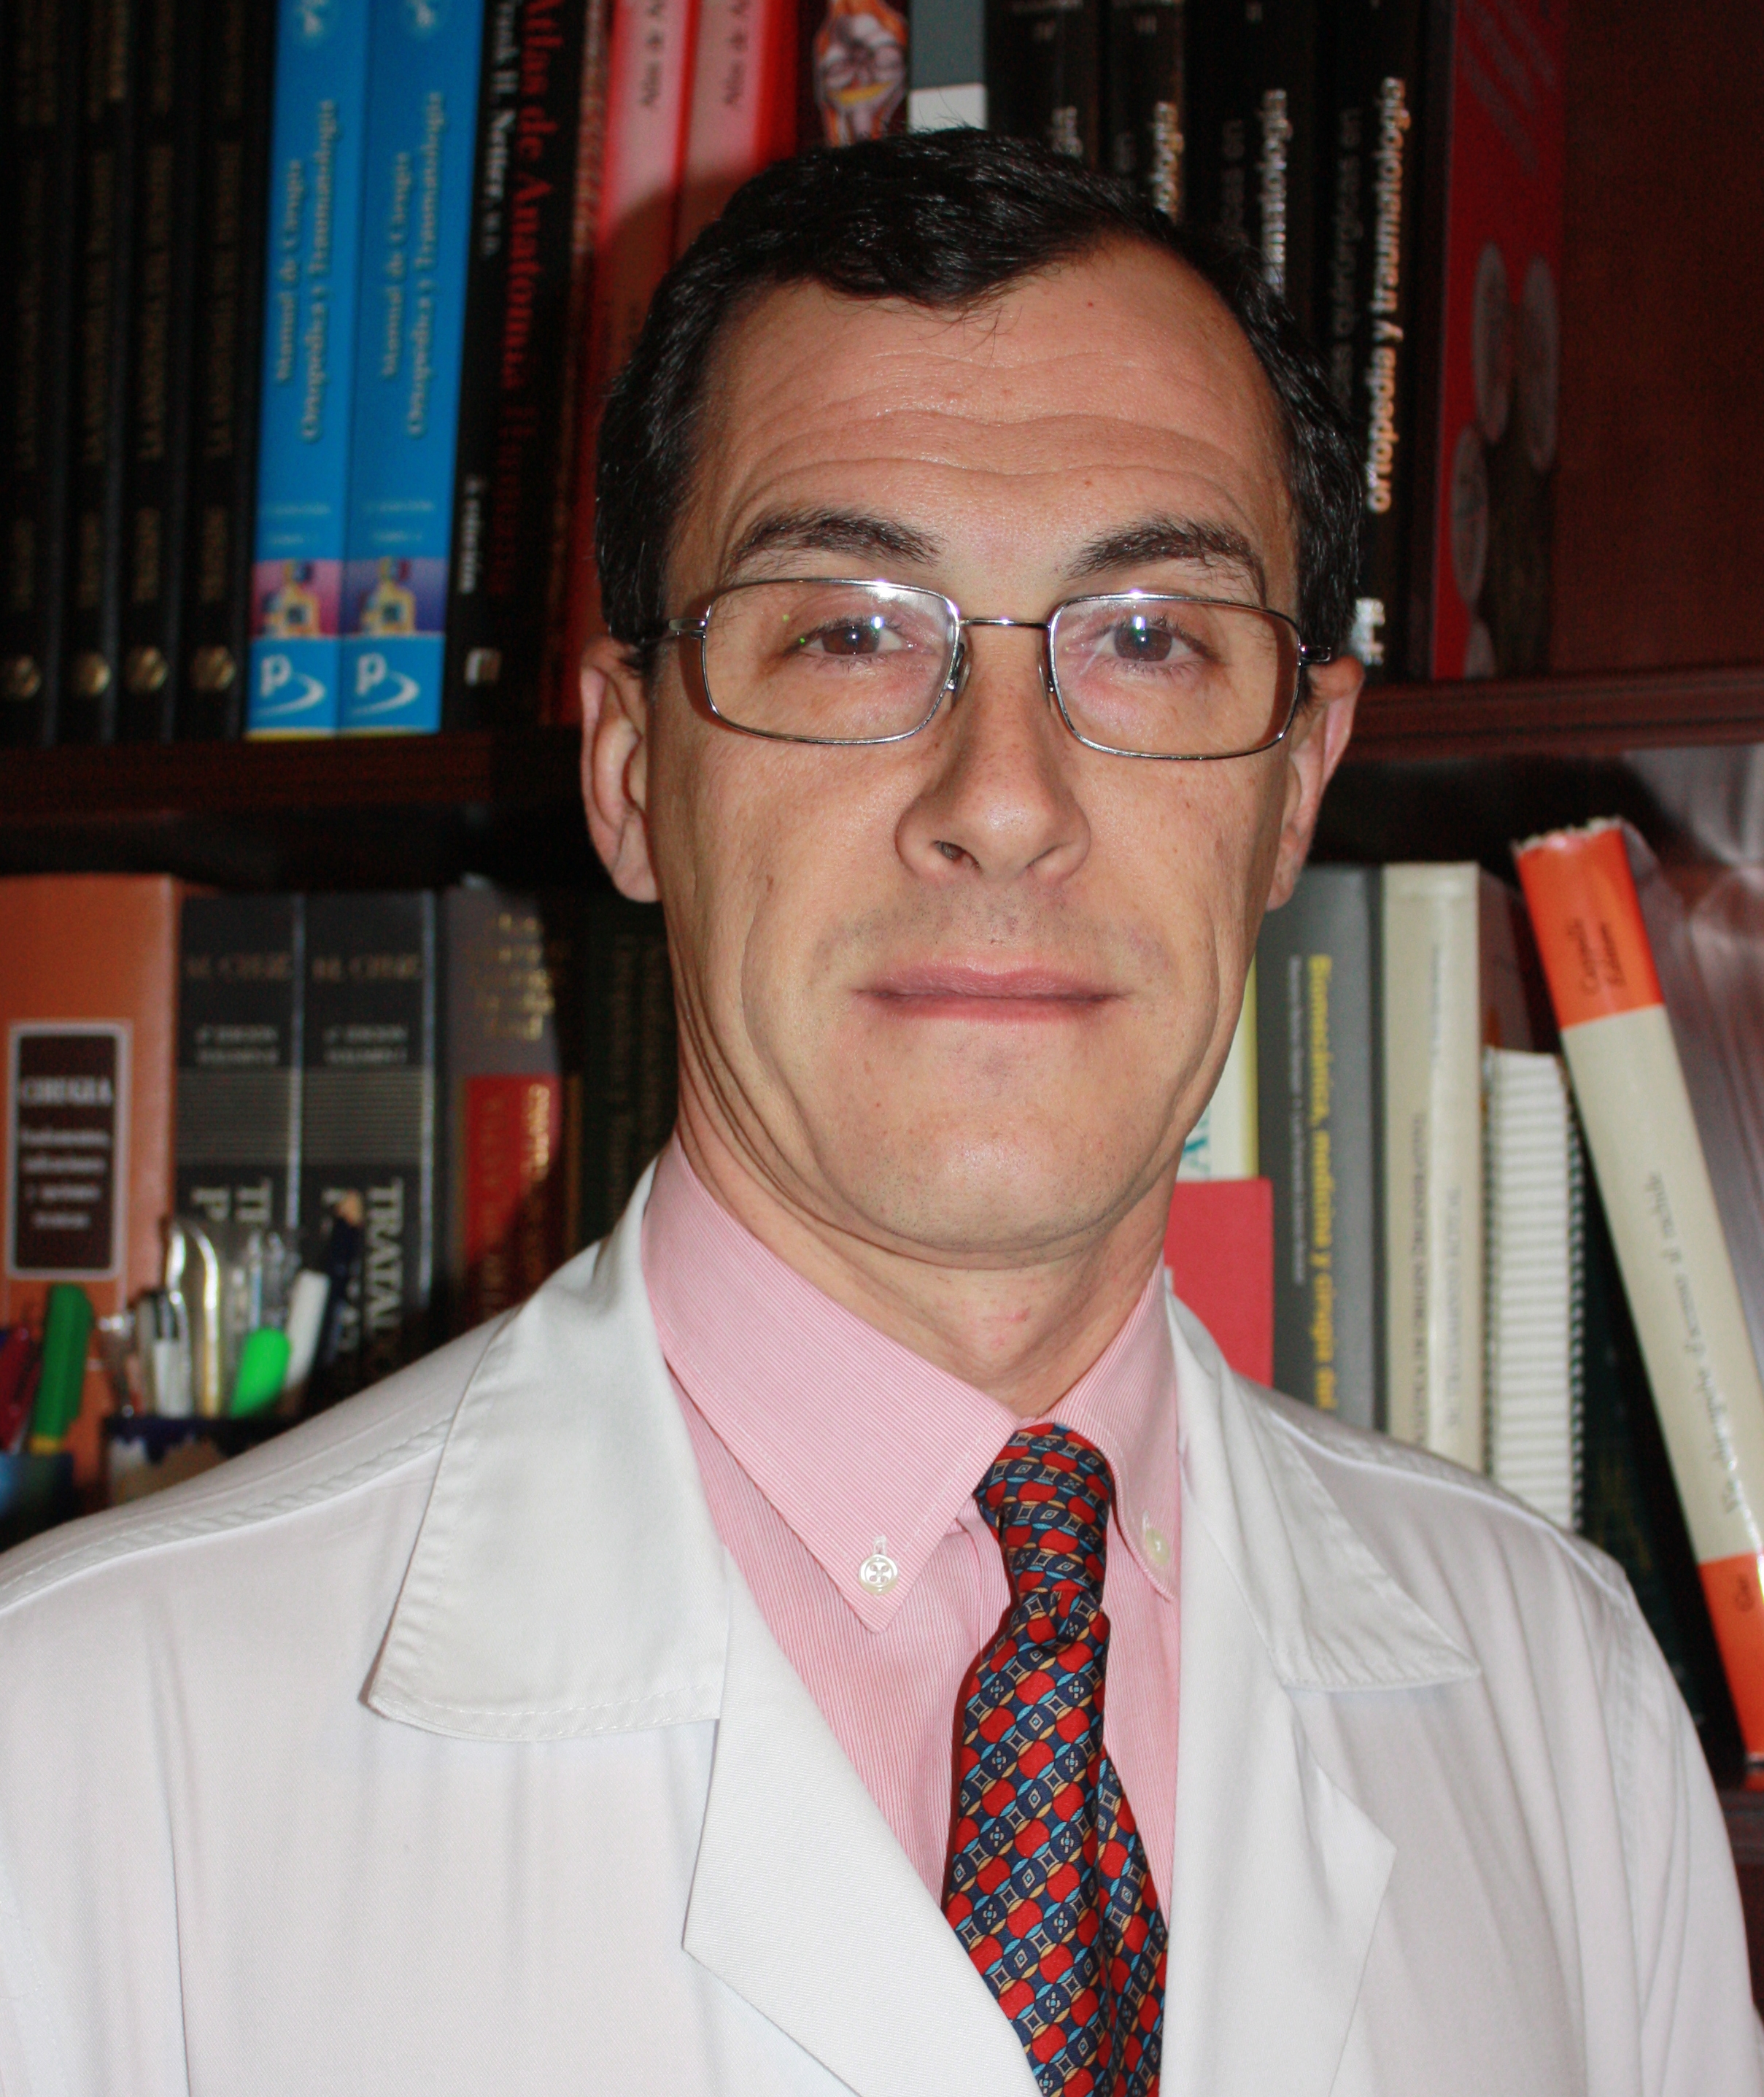 El facultativo del Hospital de Valme Ricardo Mena-Bernal, elegido vicepresidente de la Sociedad Andaluza de Traumatología y Ortopedia (SATO) 